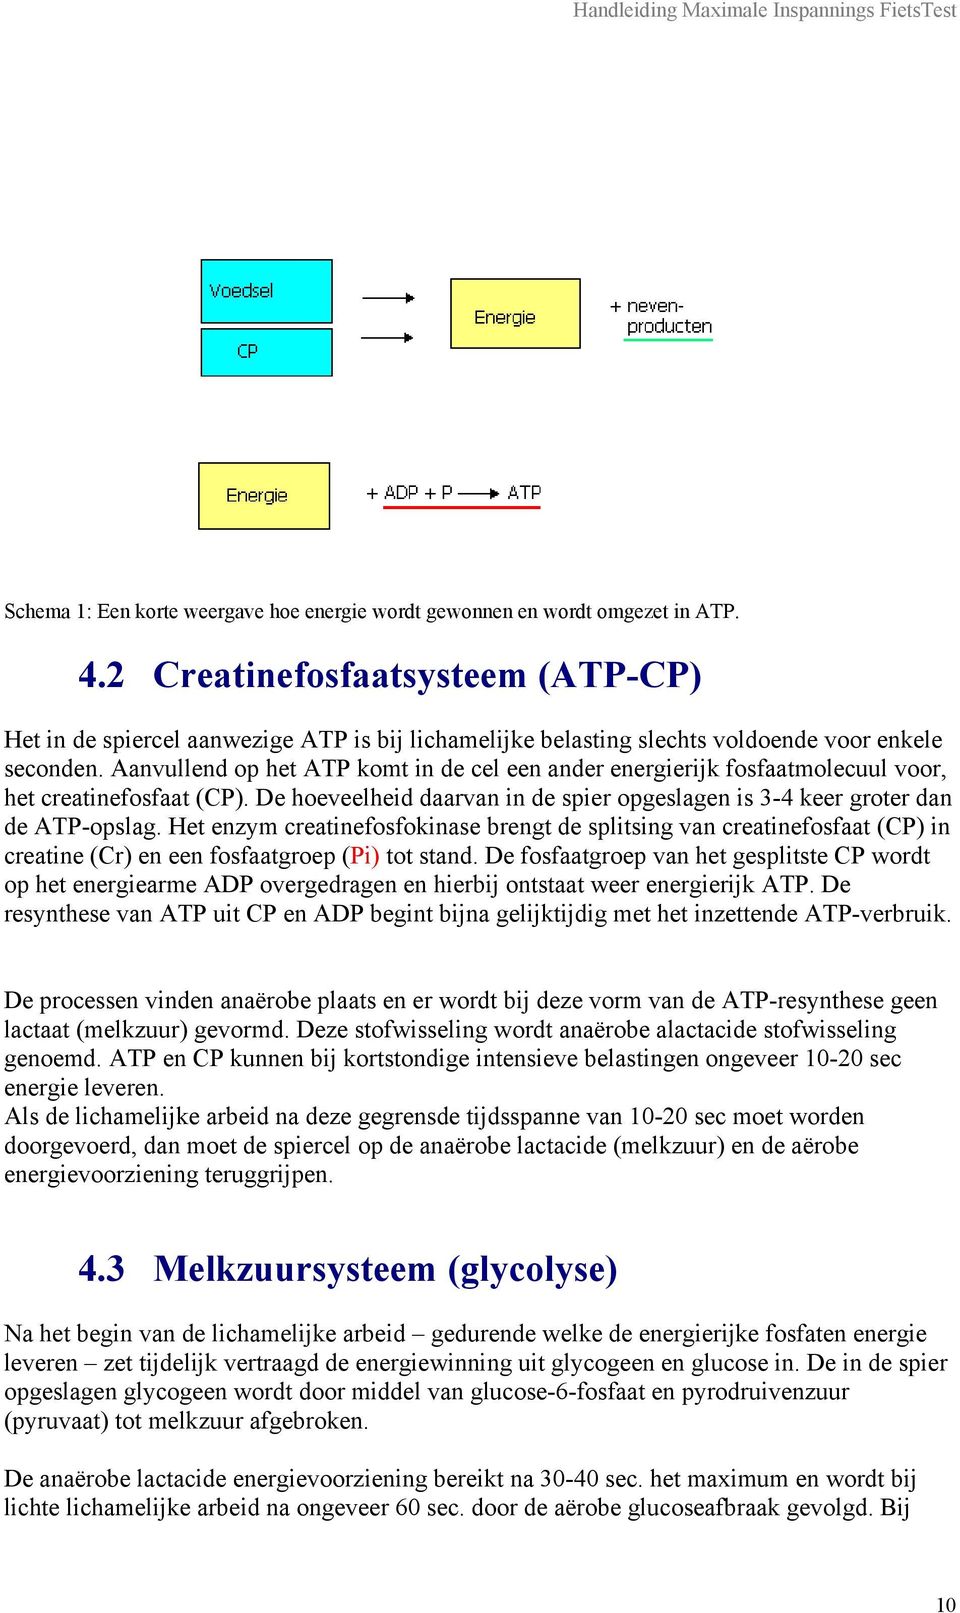 Aanvullend op het ATP komt in de cel een ander energierijk fosfaatmolecuul voor, het creatinefosfaat (CP). De hoeveelheid daarvan in de spier opgeslagen is 3-4 keer groter dan de ATP-opslag.